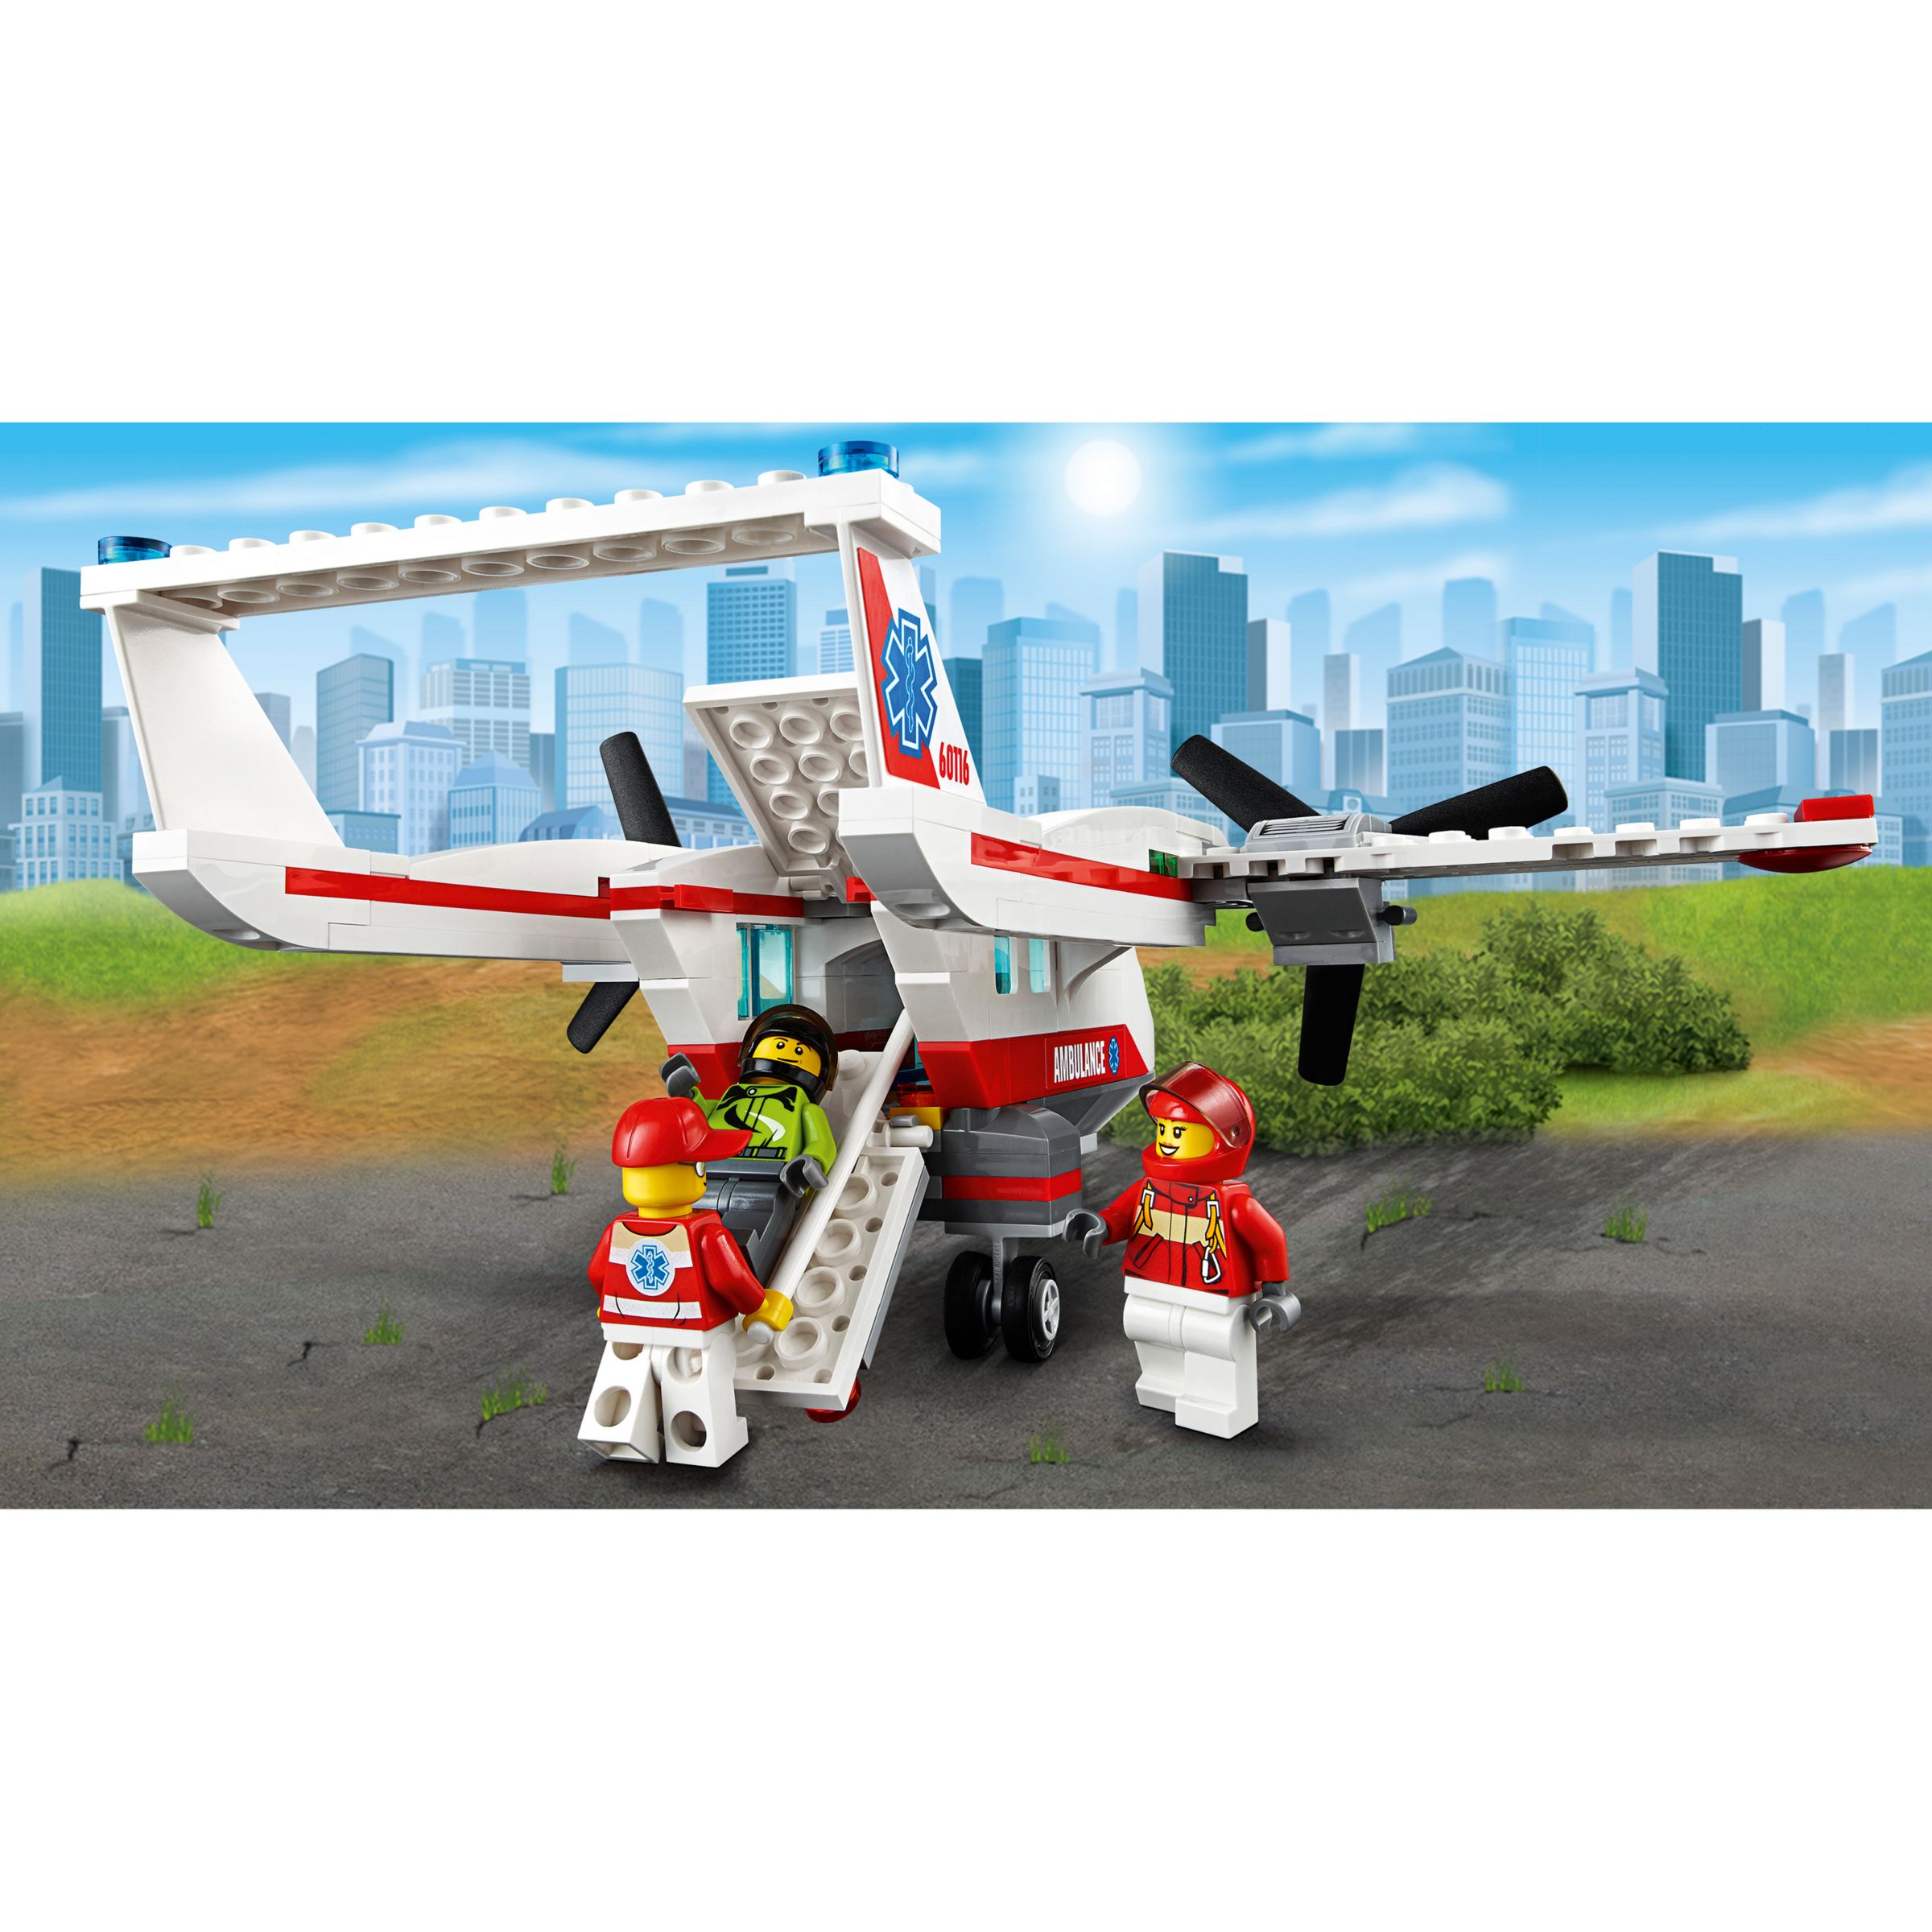 lego 60116 city ambulance plane